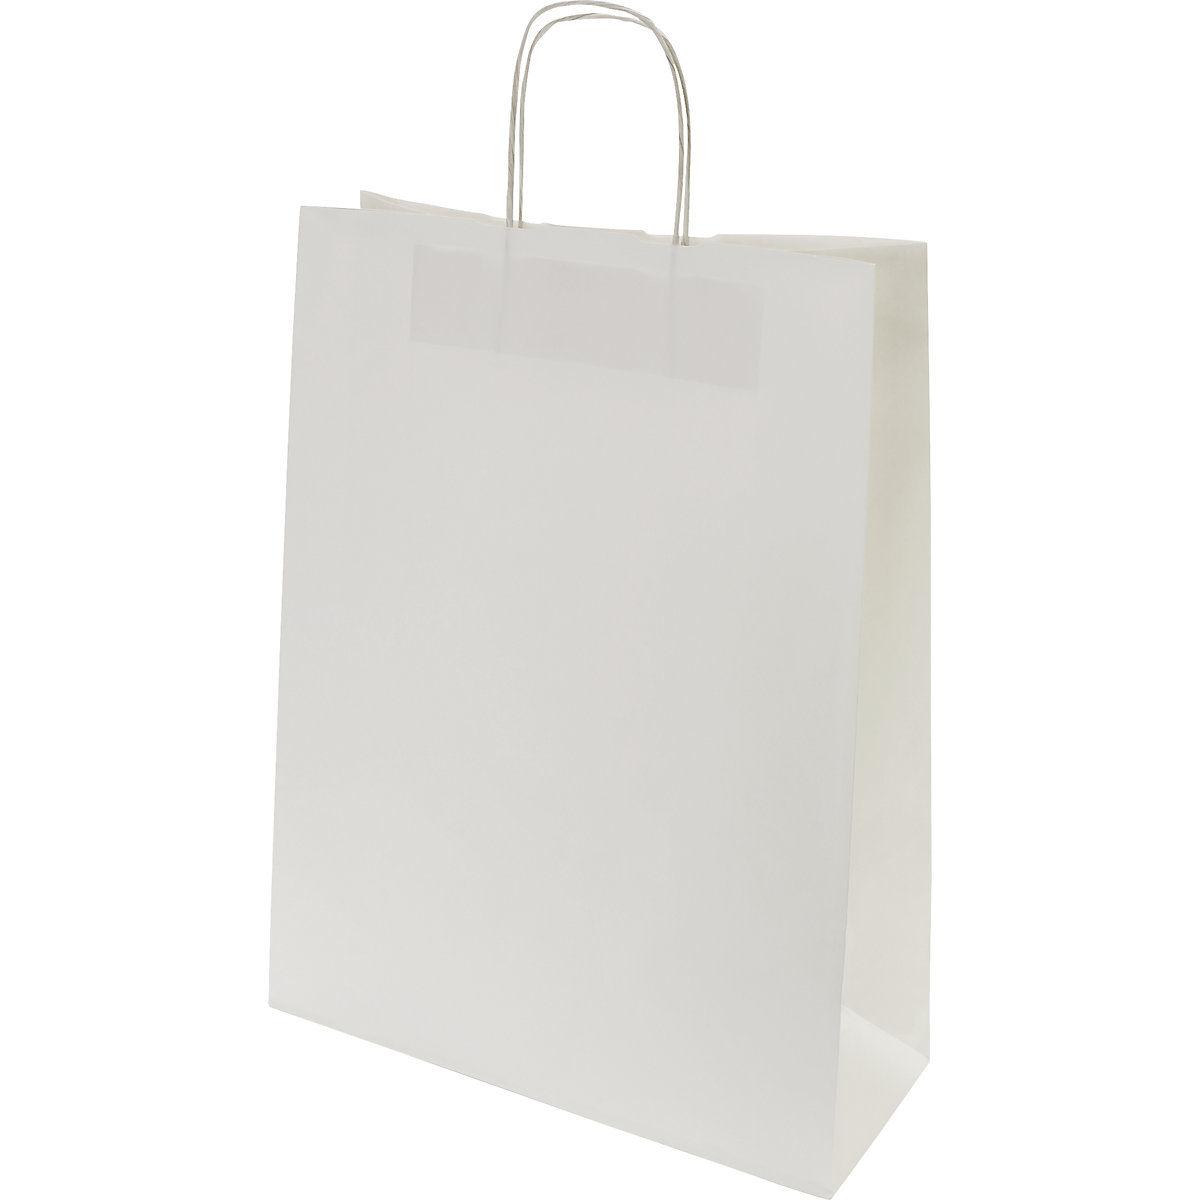 Papiertragetasche FRESH, weiß, LxBxH 425 x 320 x 130 mm, 100 g/m², VE 250 Stk, ab 5 VE-2